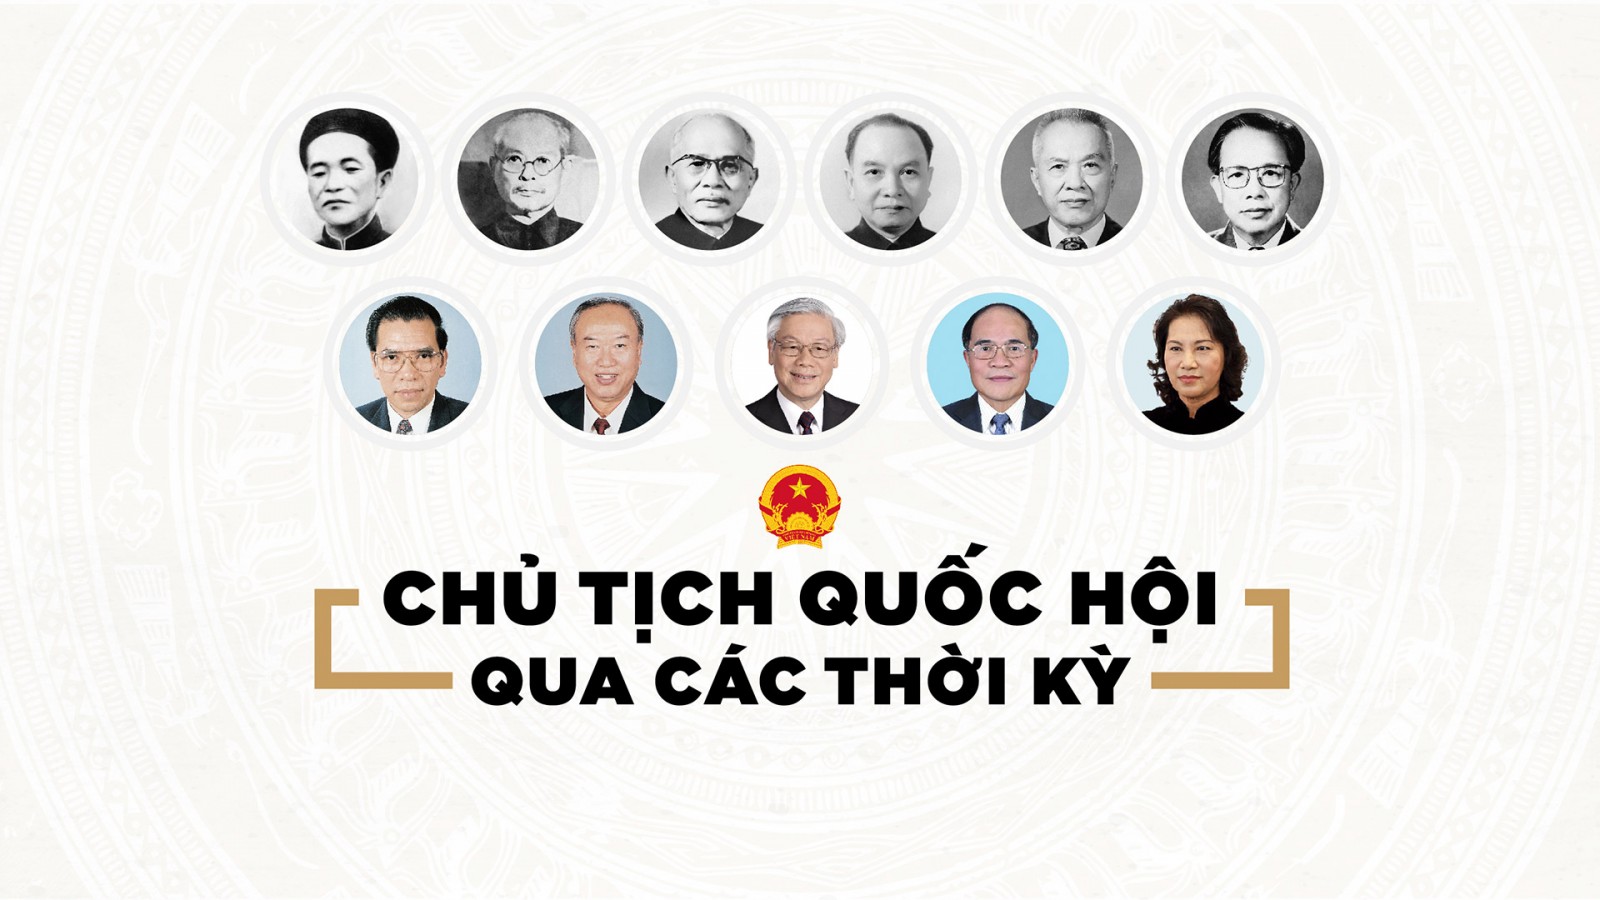 Infographic Chủ tịch Quốc hội Việt Nam qua các thời kỳ